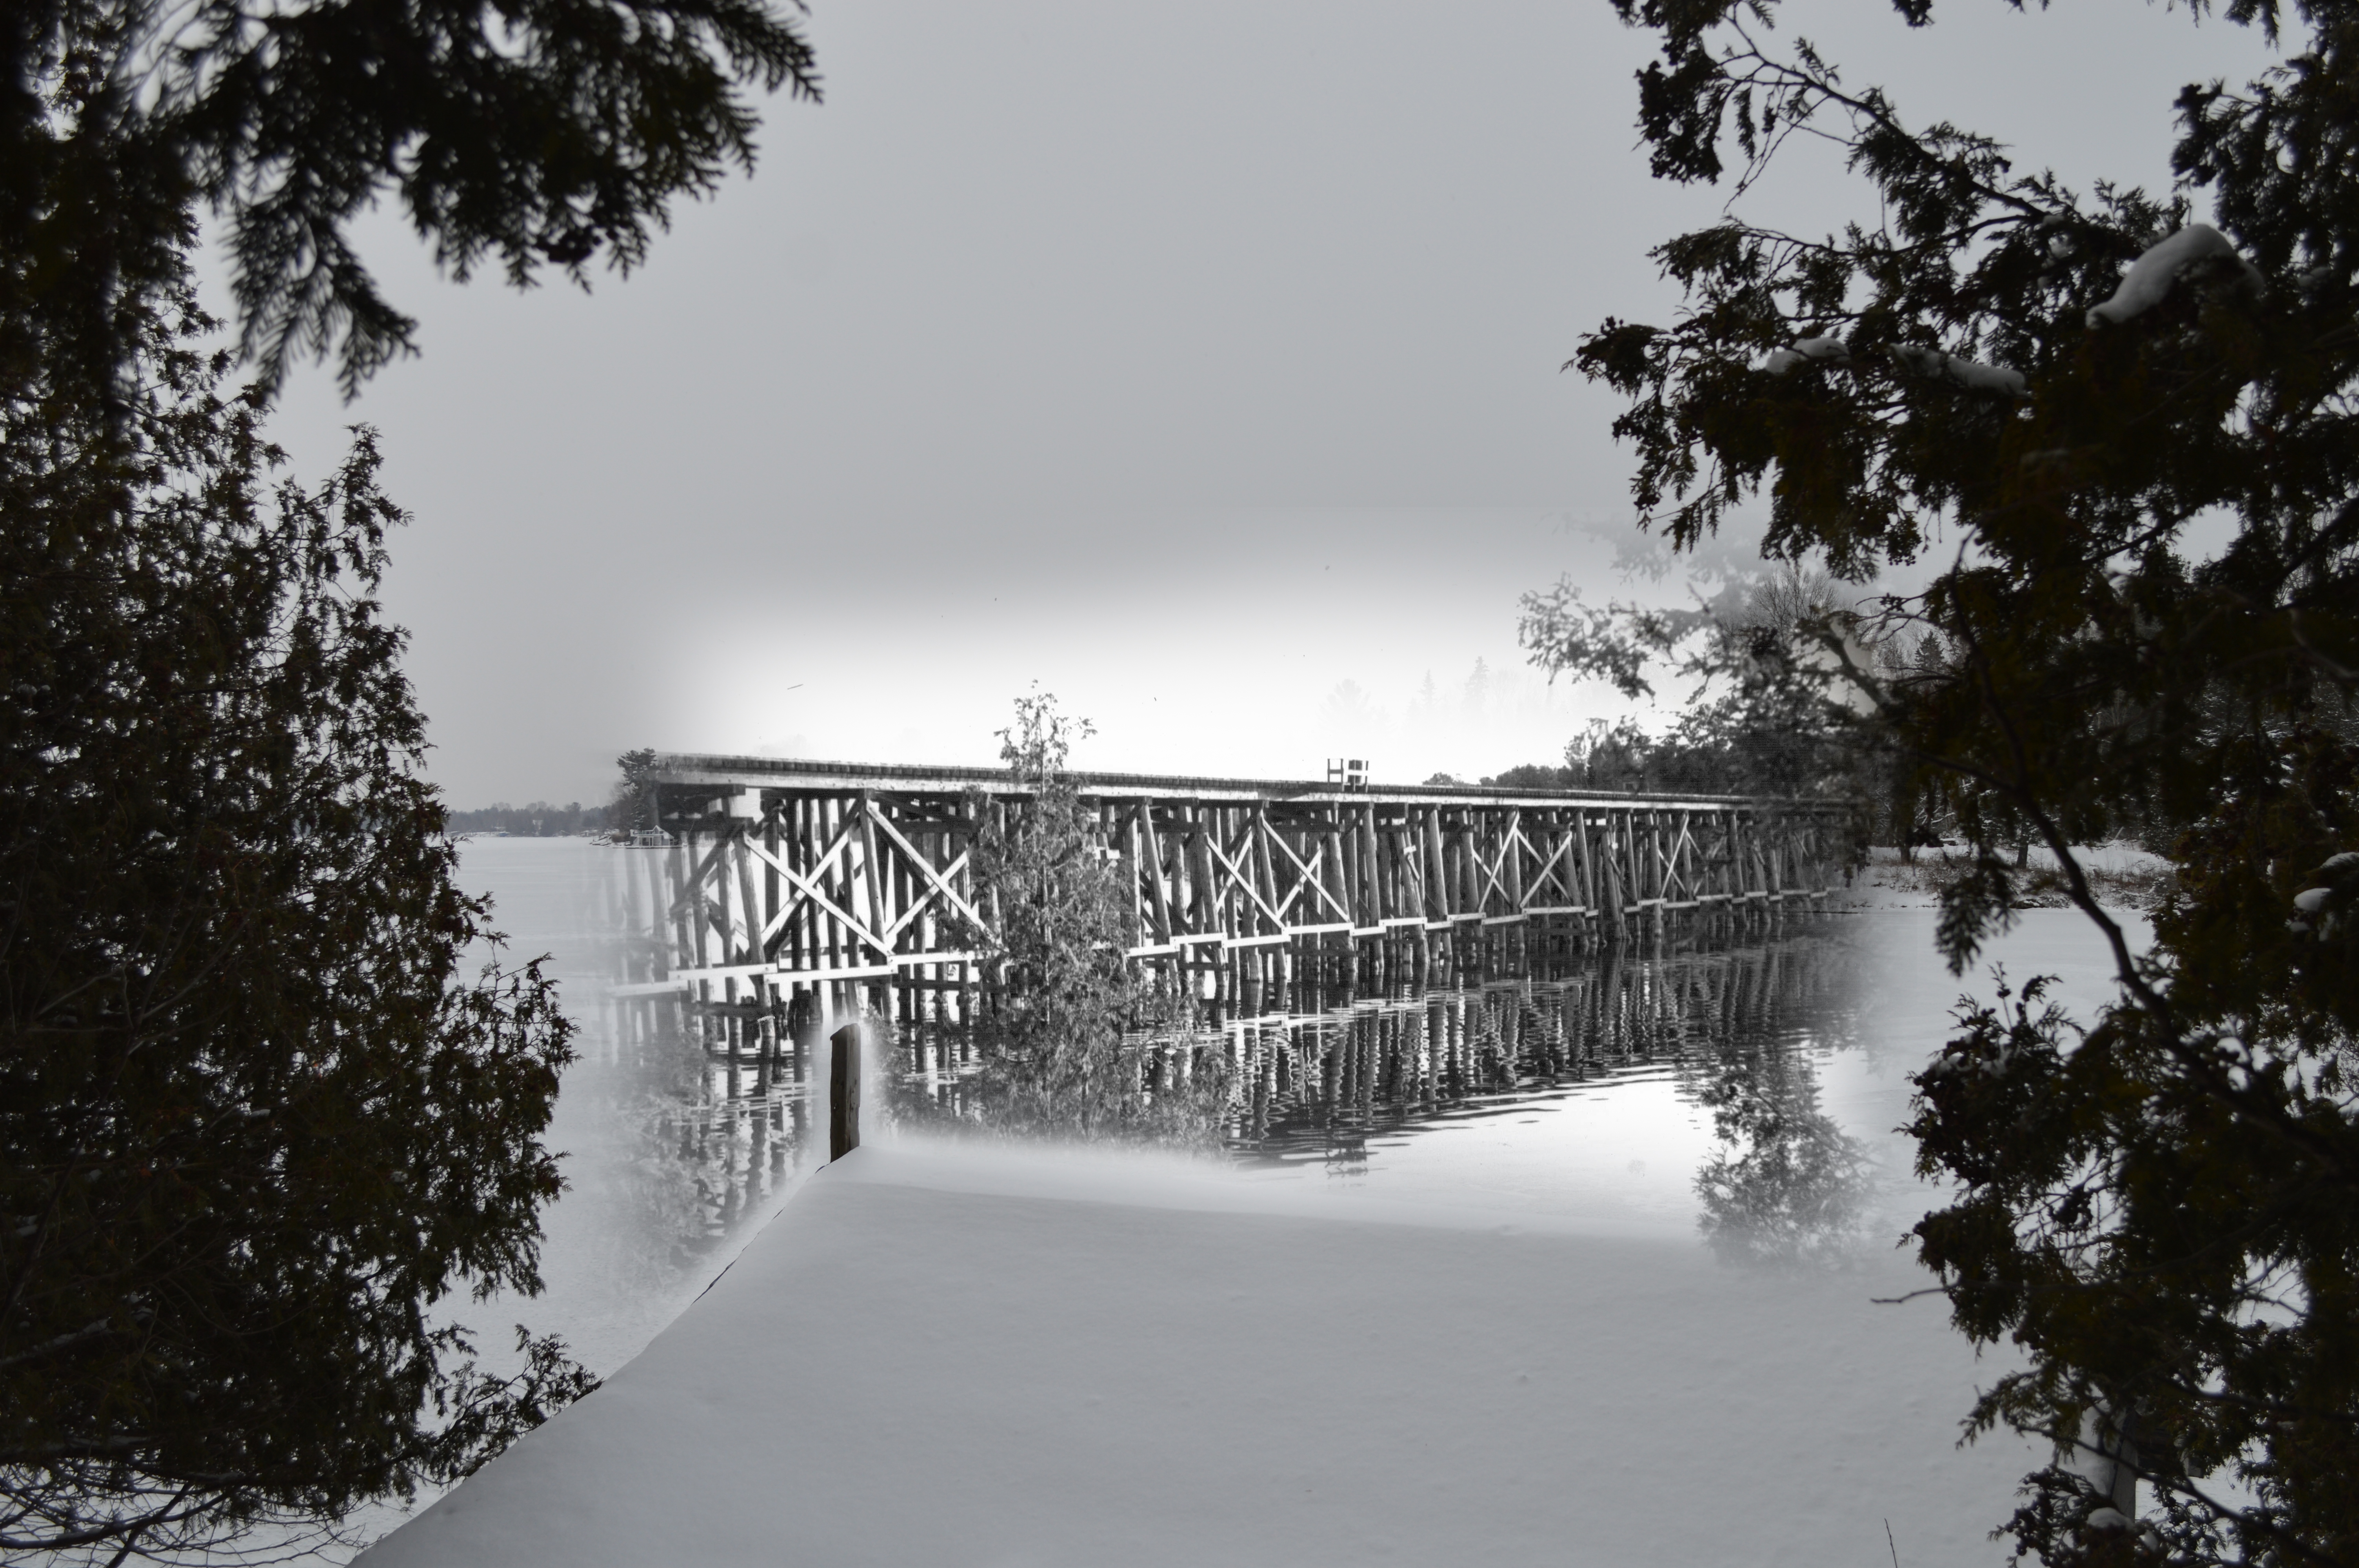 Une photo en noir et blanc d'un pont ferroviaire en bois se fond dans une image contemporaine — dans laquelle le pont n'existe plus.